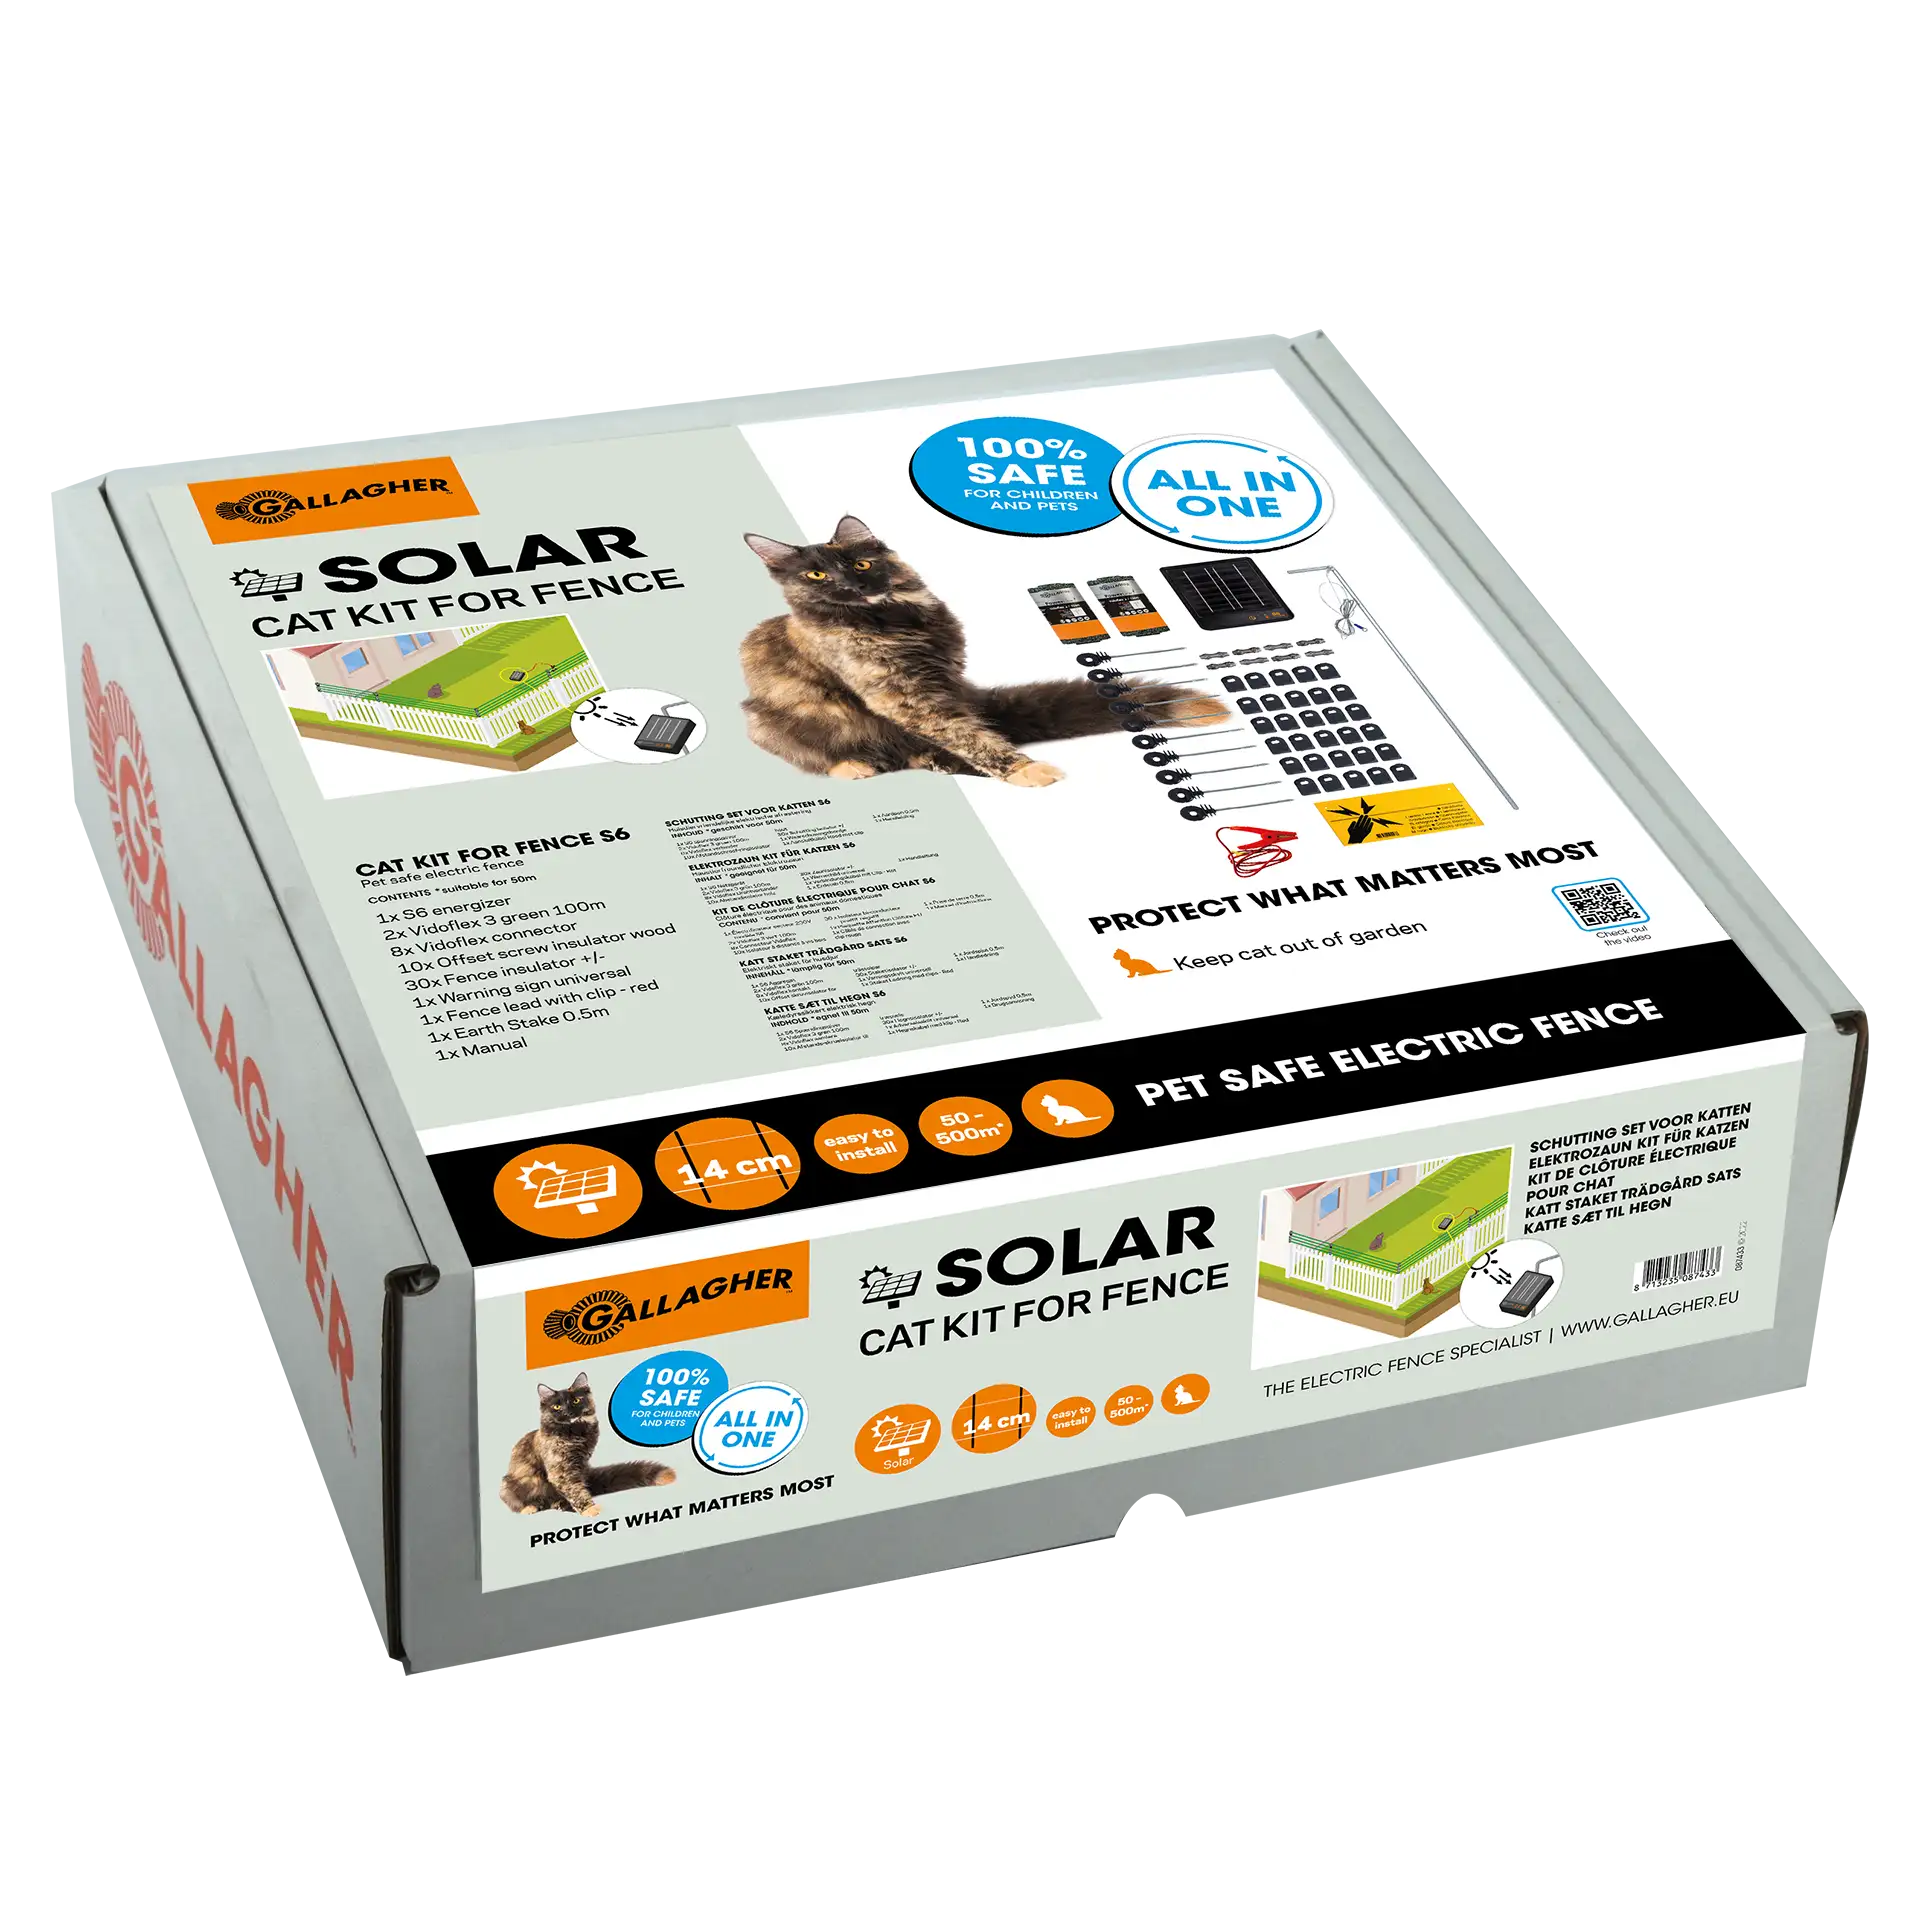 Cat kit for fence S6 Solar